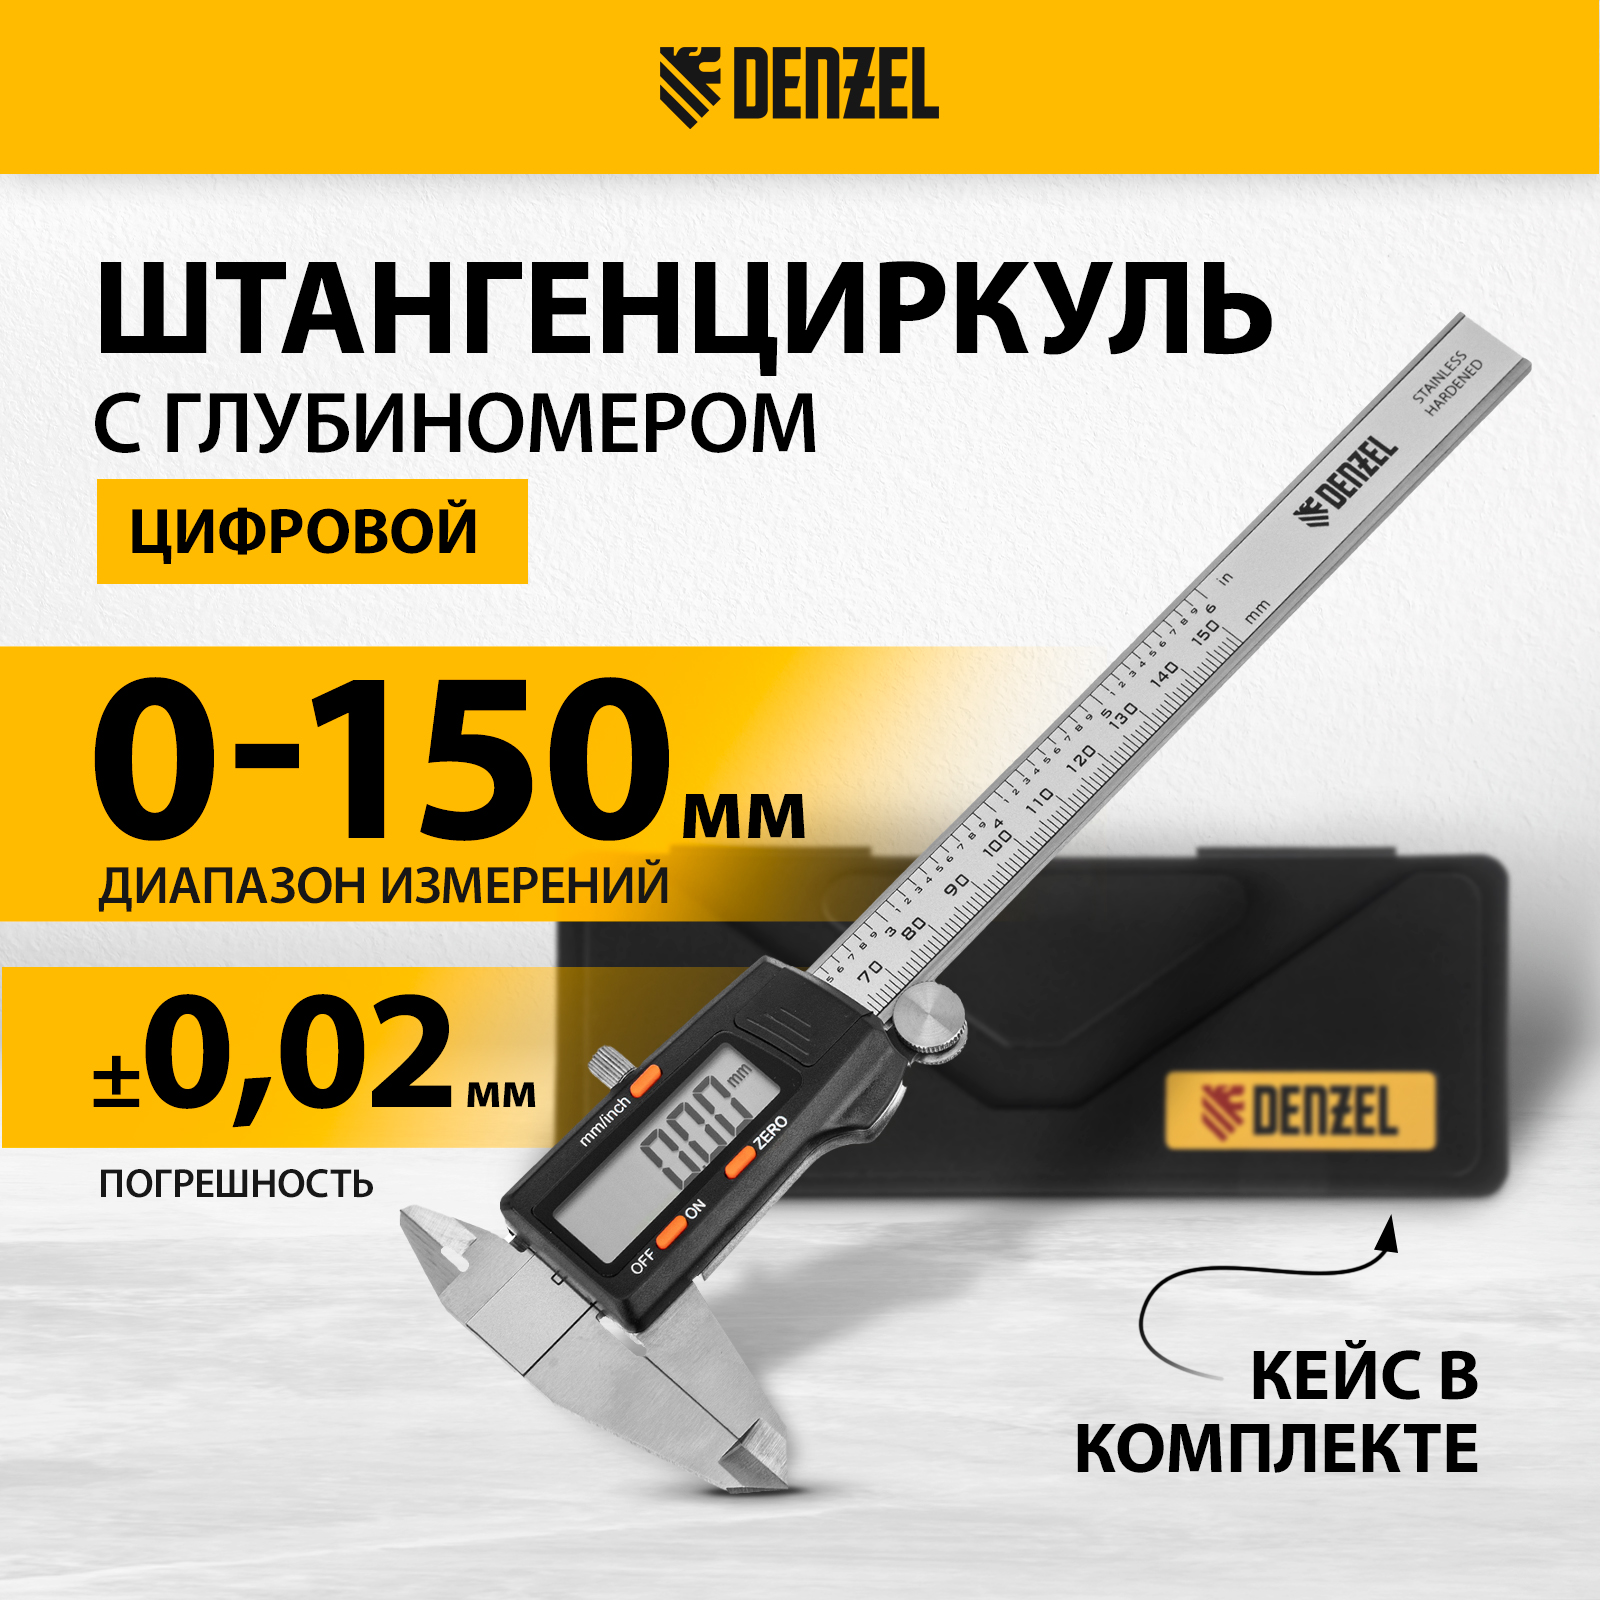 Штангенциркуль DENZEL 150 мм электронный, с глубиномером 31613 штангенциркуль denzel 150 мм электронный с глубиномером 31613